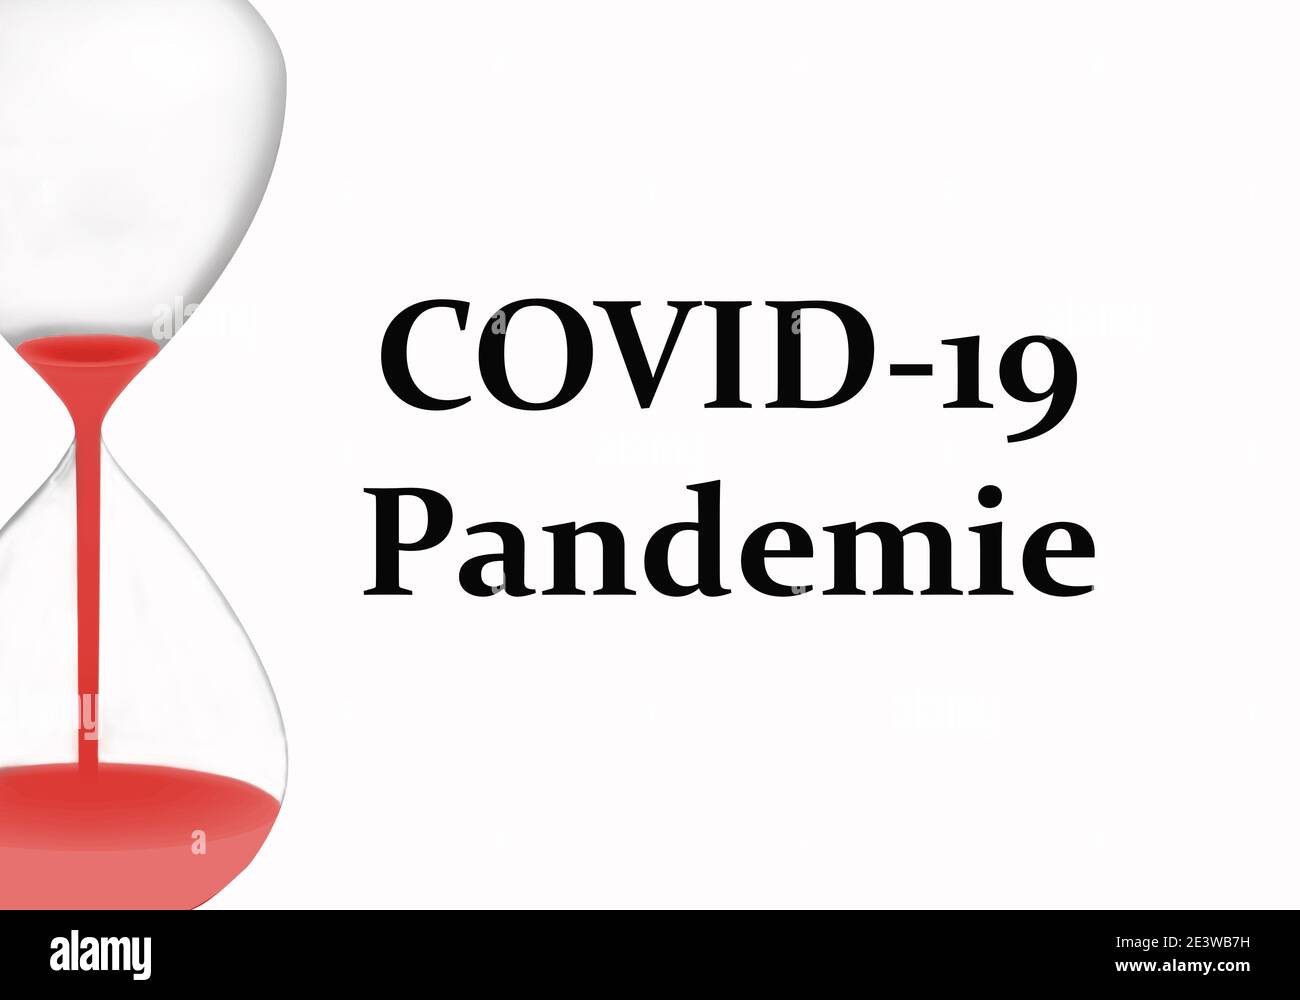 Mantener simple símbolo y concepto de simplicidad: Covid-19 Pandemie. Fondo blanco Foto de stock